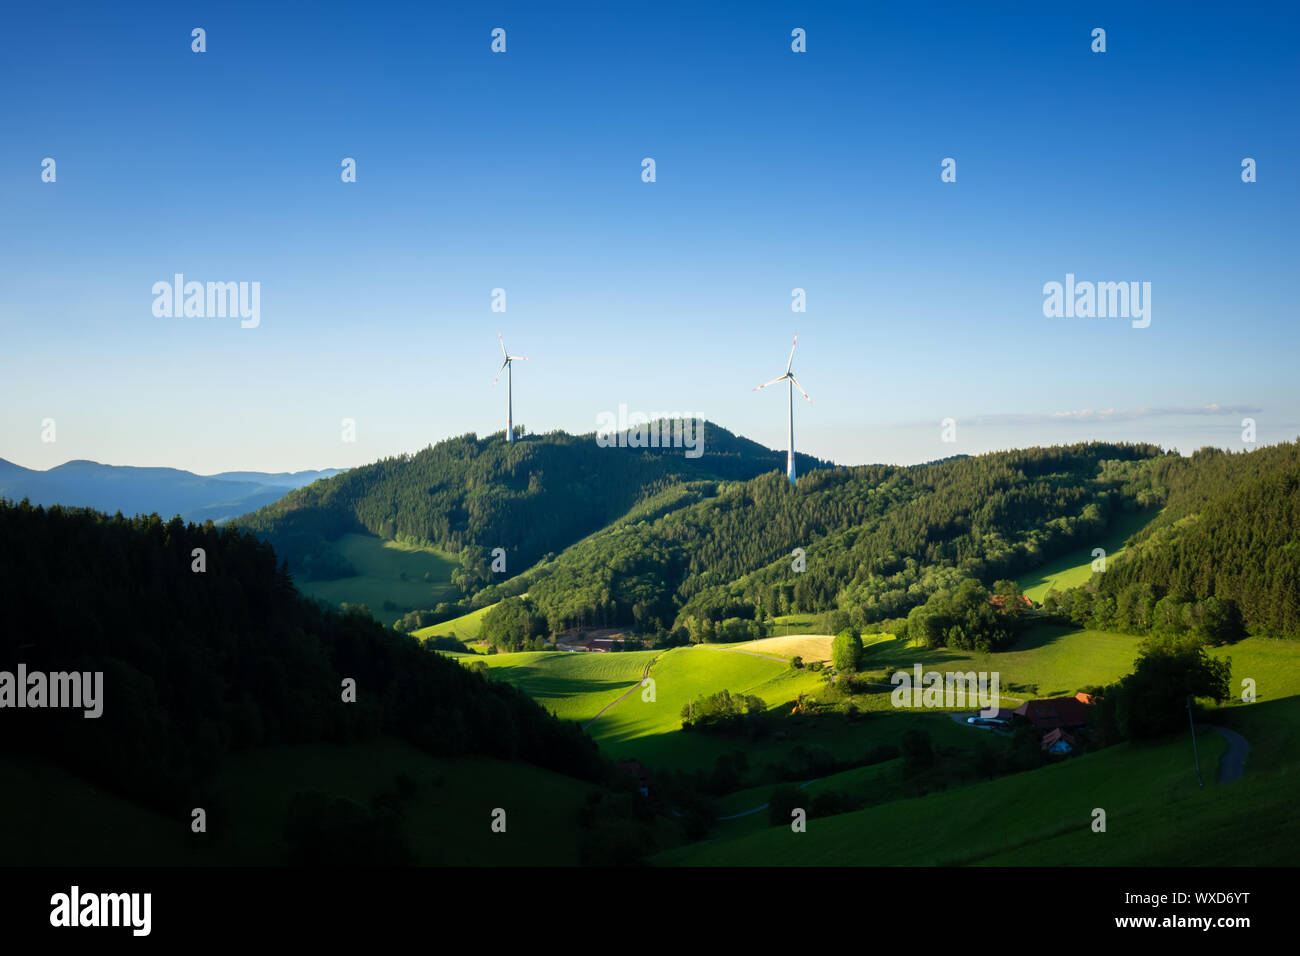 Paysage avec de l'énergie éolienne dans la région de la Forêt-Noire Allemagne Banque D'Images